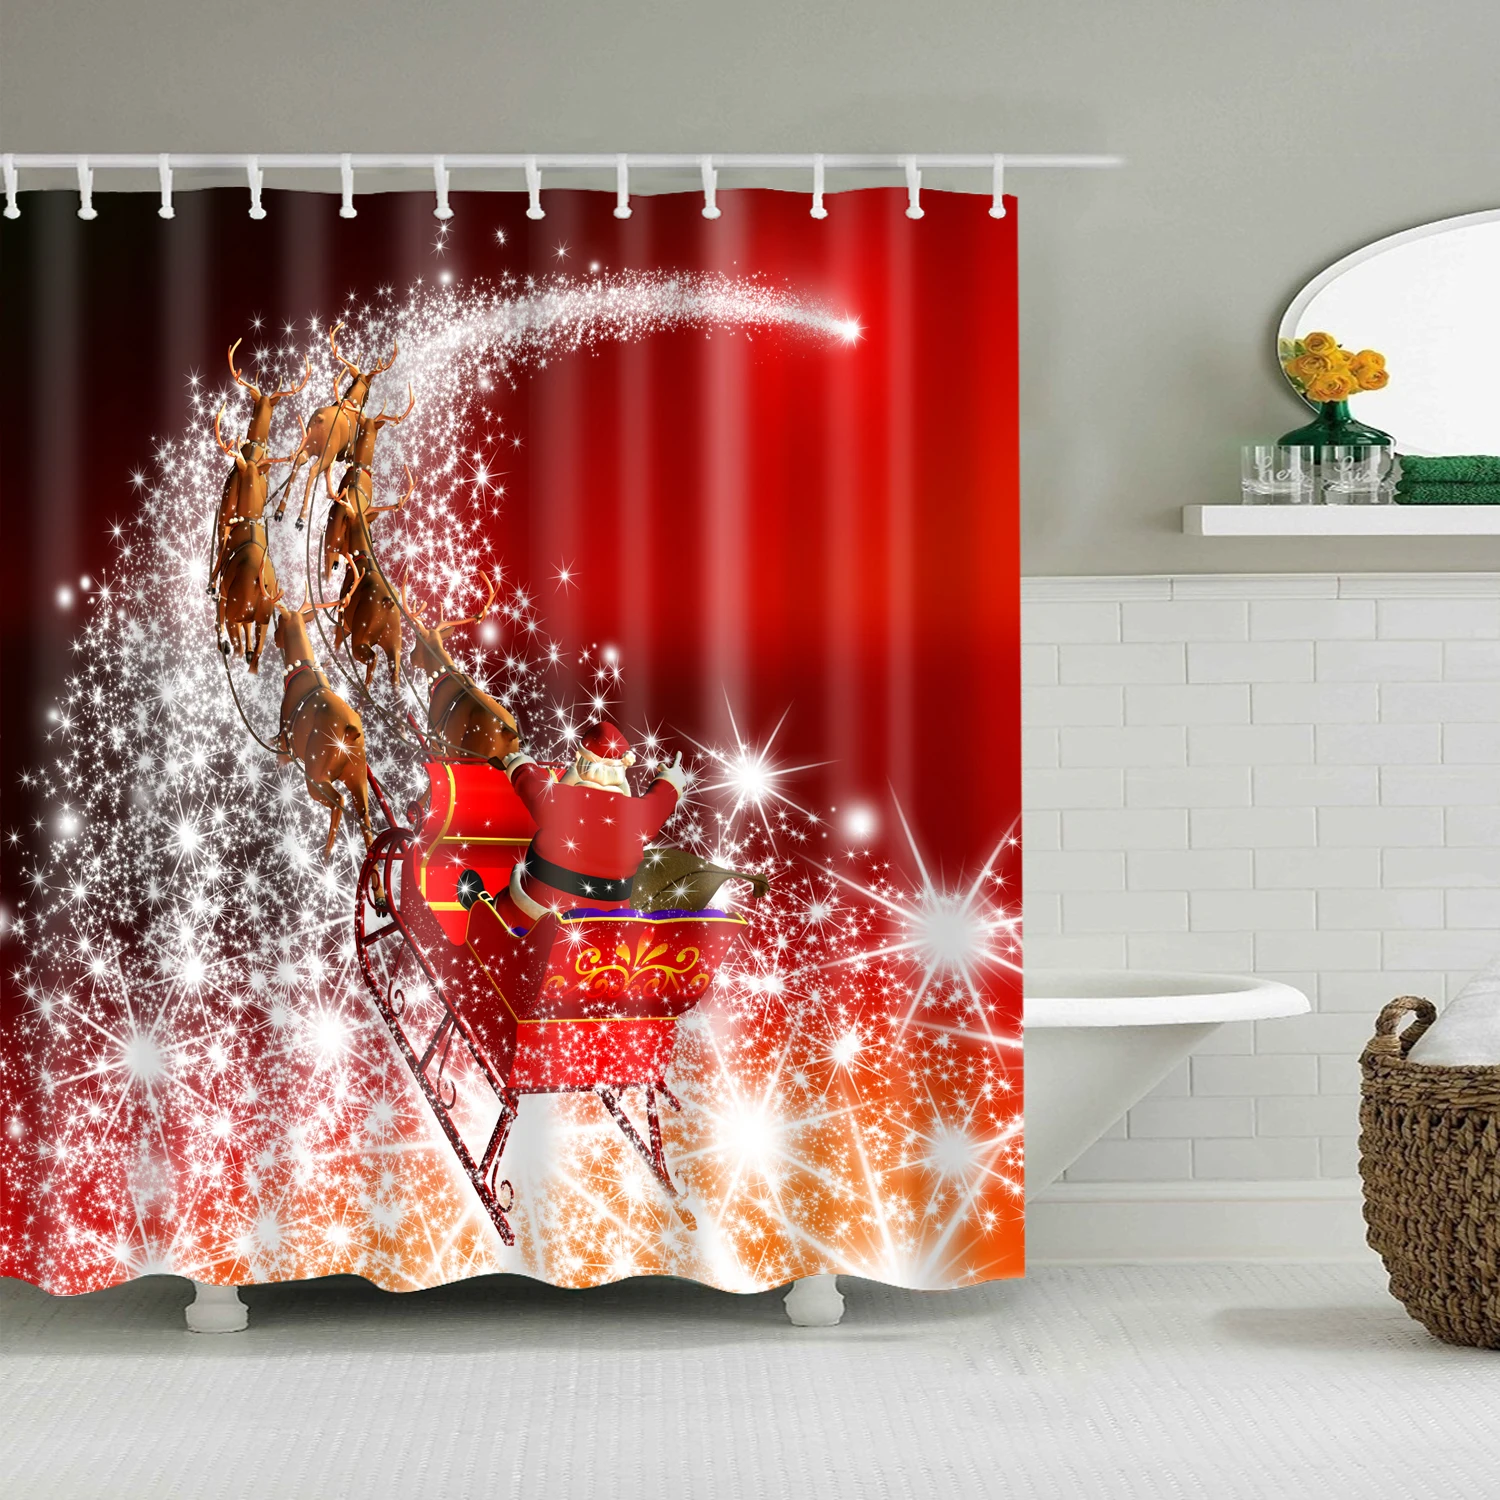 Светящаяся Рождественская занавеска для душа, Новогодняя Водонепроницаемая красная занавеска s для душа, ванной комнаты, рождественские украшения, подарки 200x150 см